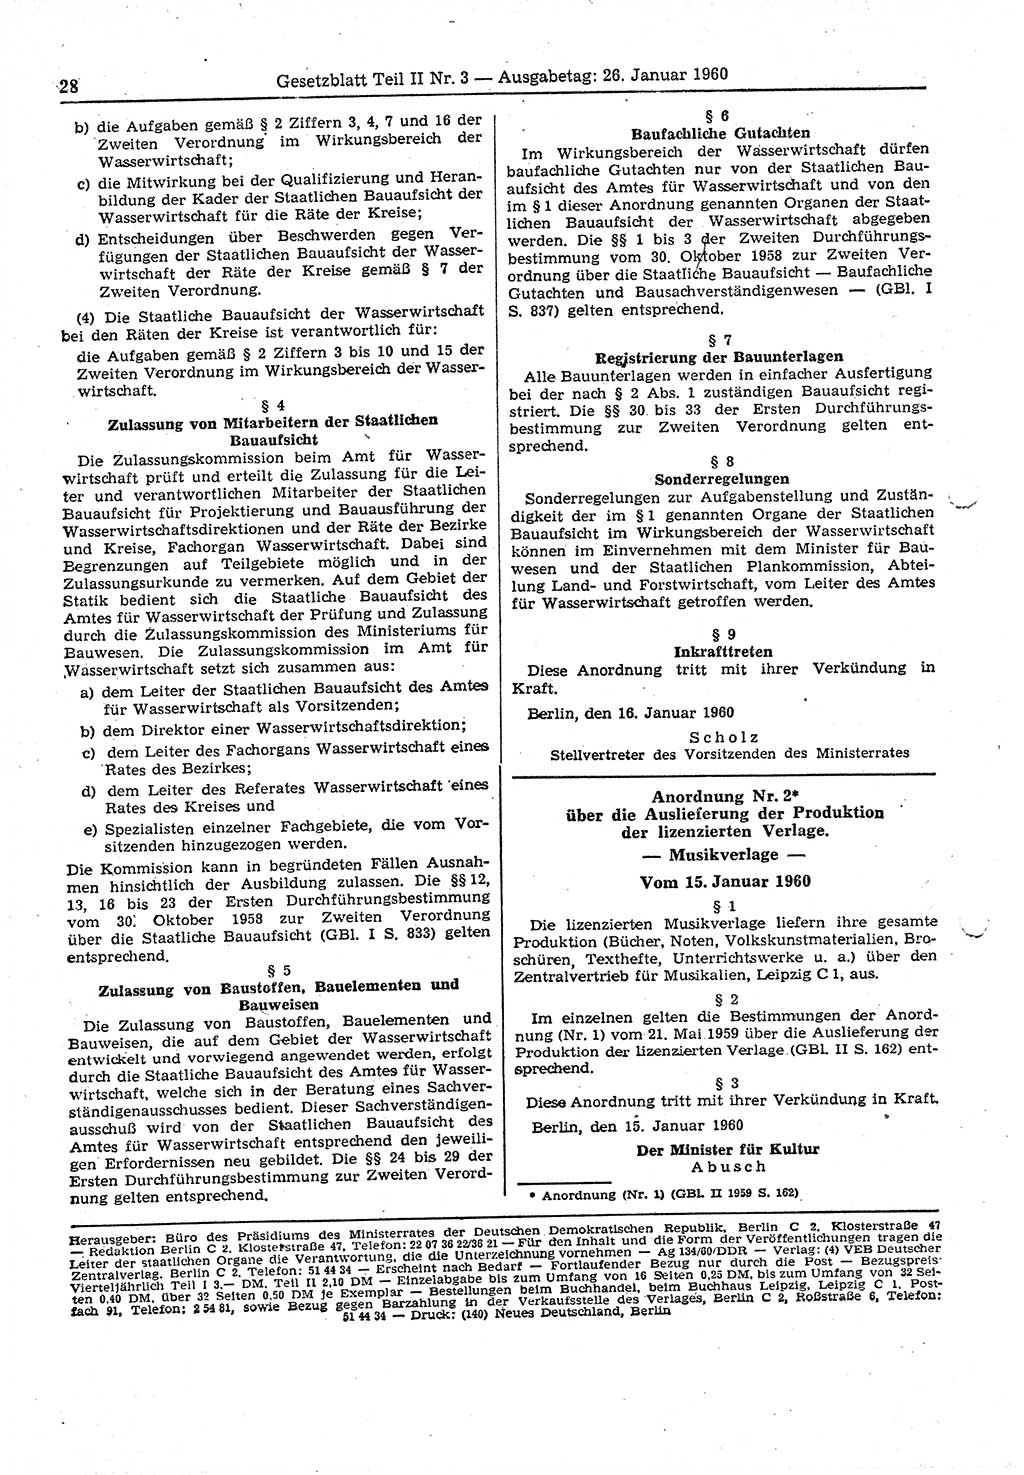 Gesetzblatt (GBl.) der Deutschen Demokratischen Republik (DDR) Teil â… â… 1960, Seite 28 (GBl. DDR â… â… 1960, S. 28)